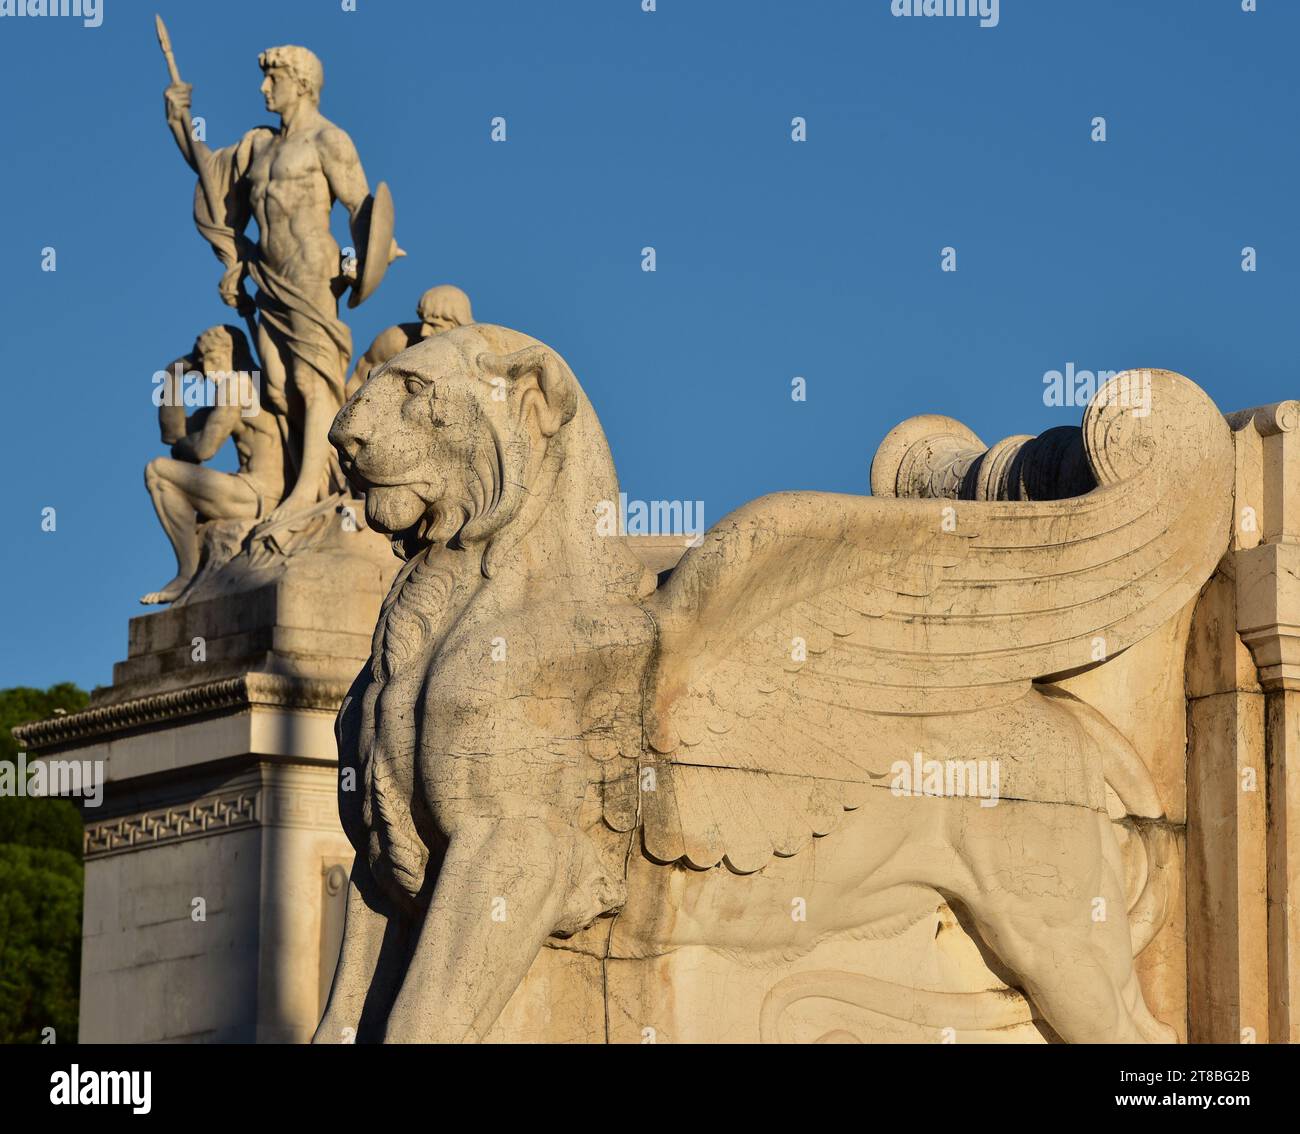 Leone alato in marmo, parte del monumento a Vittorio Emanuele si erge accanto alla scultura "Eroi in Piazza Venezia". Roma, Italia, Europa. Foto Stock